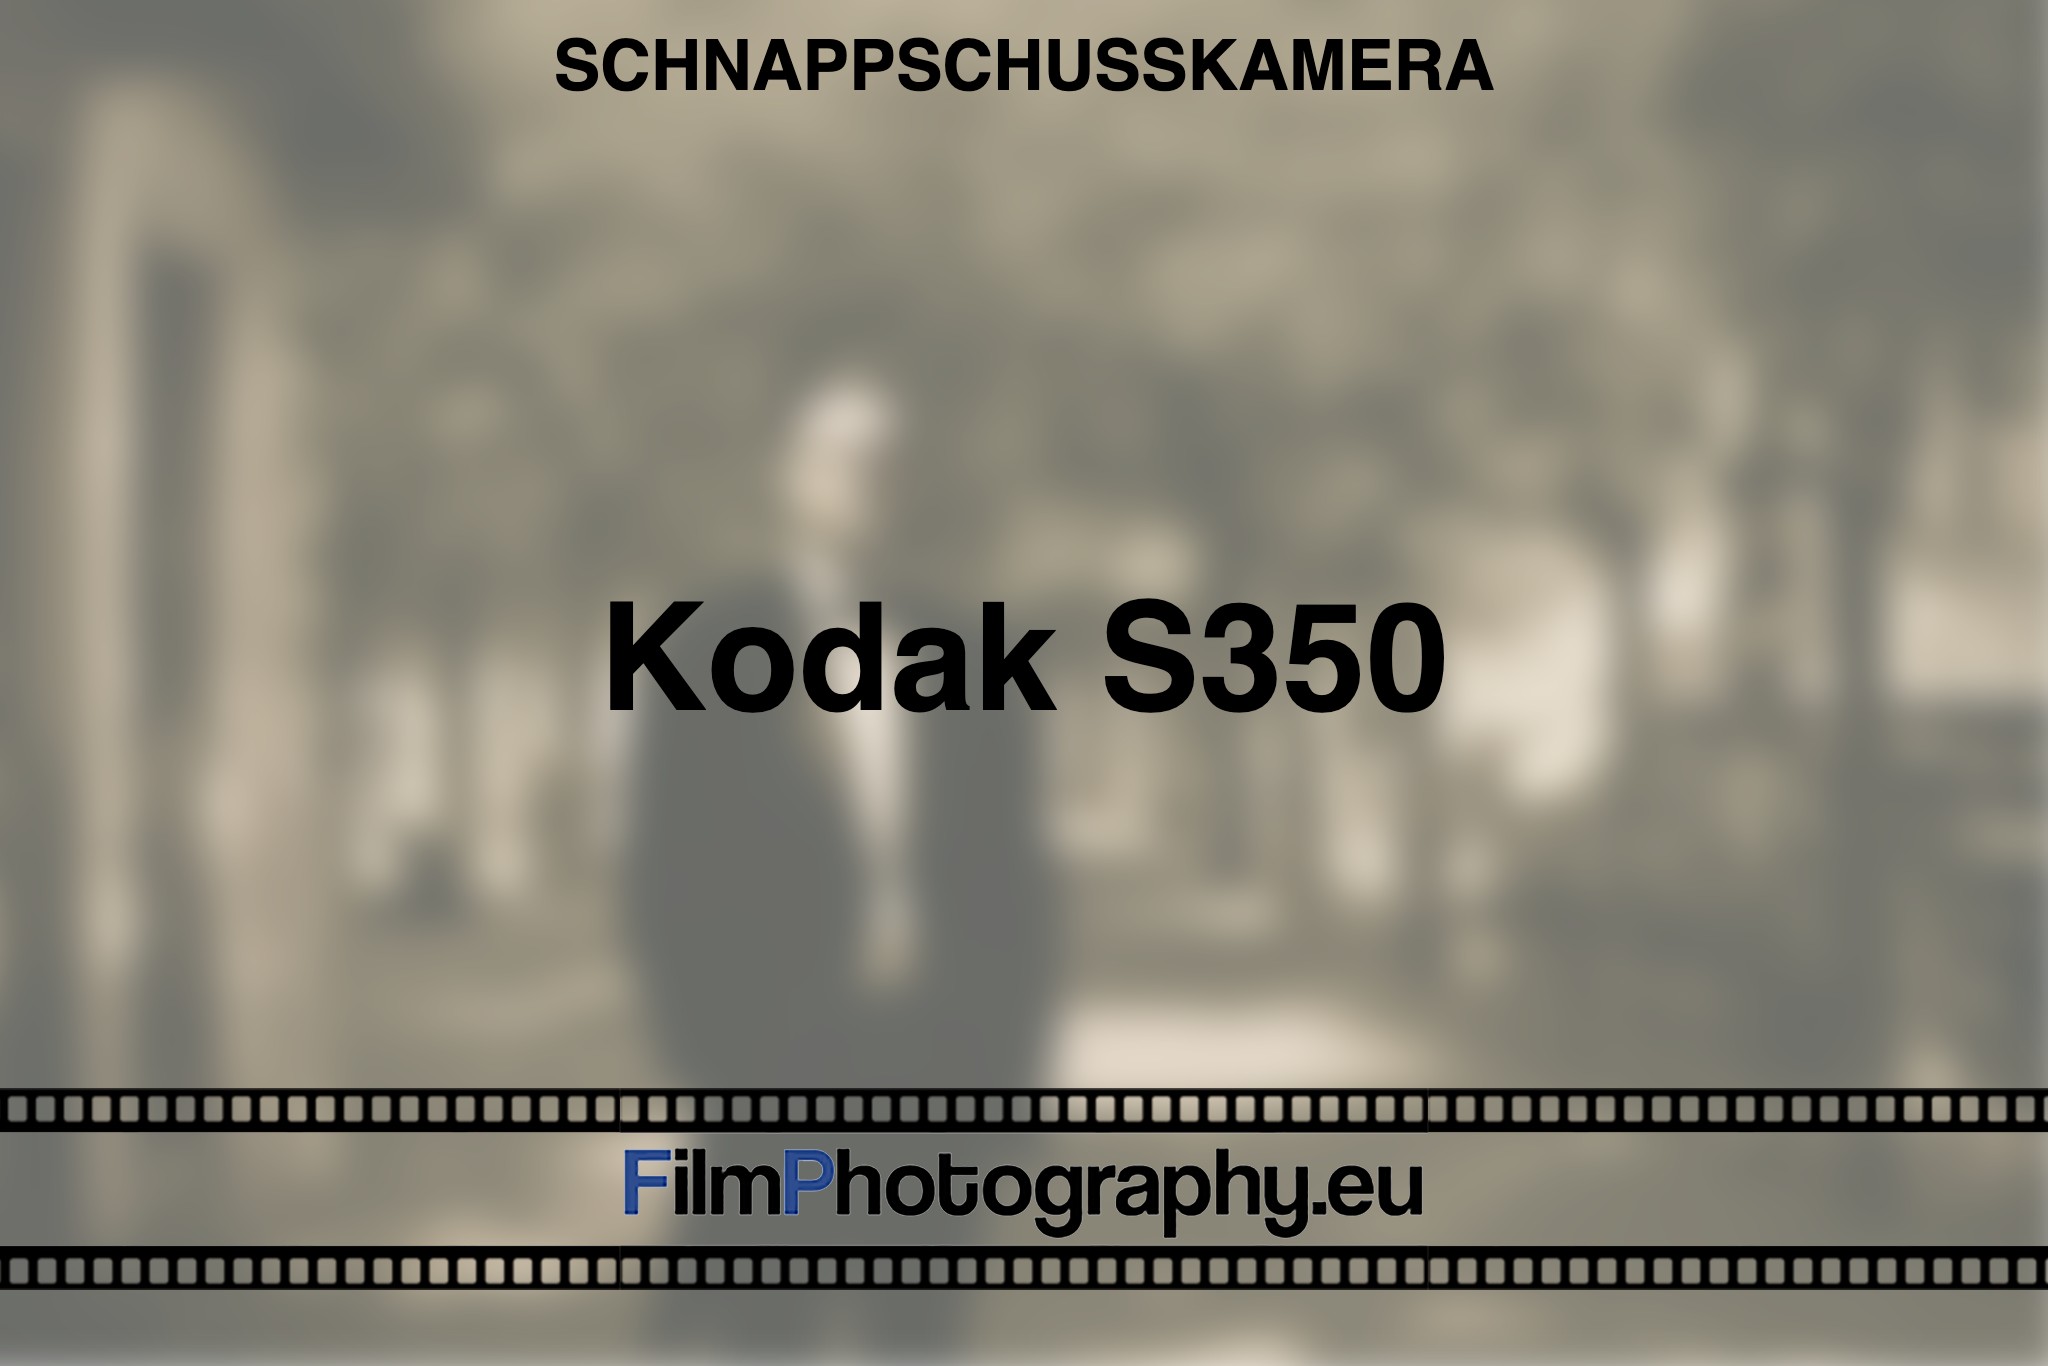 kodak-s350-schnappschusskamera-bnv